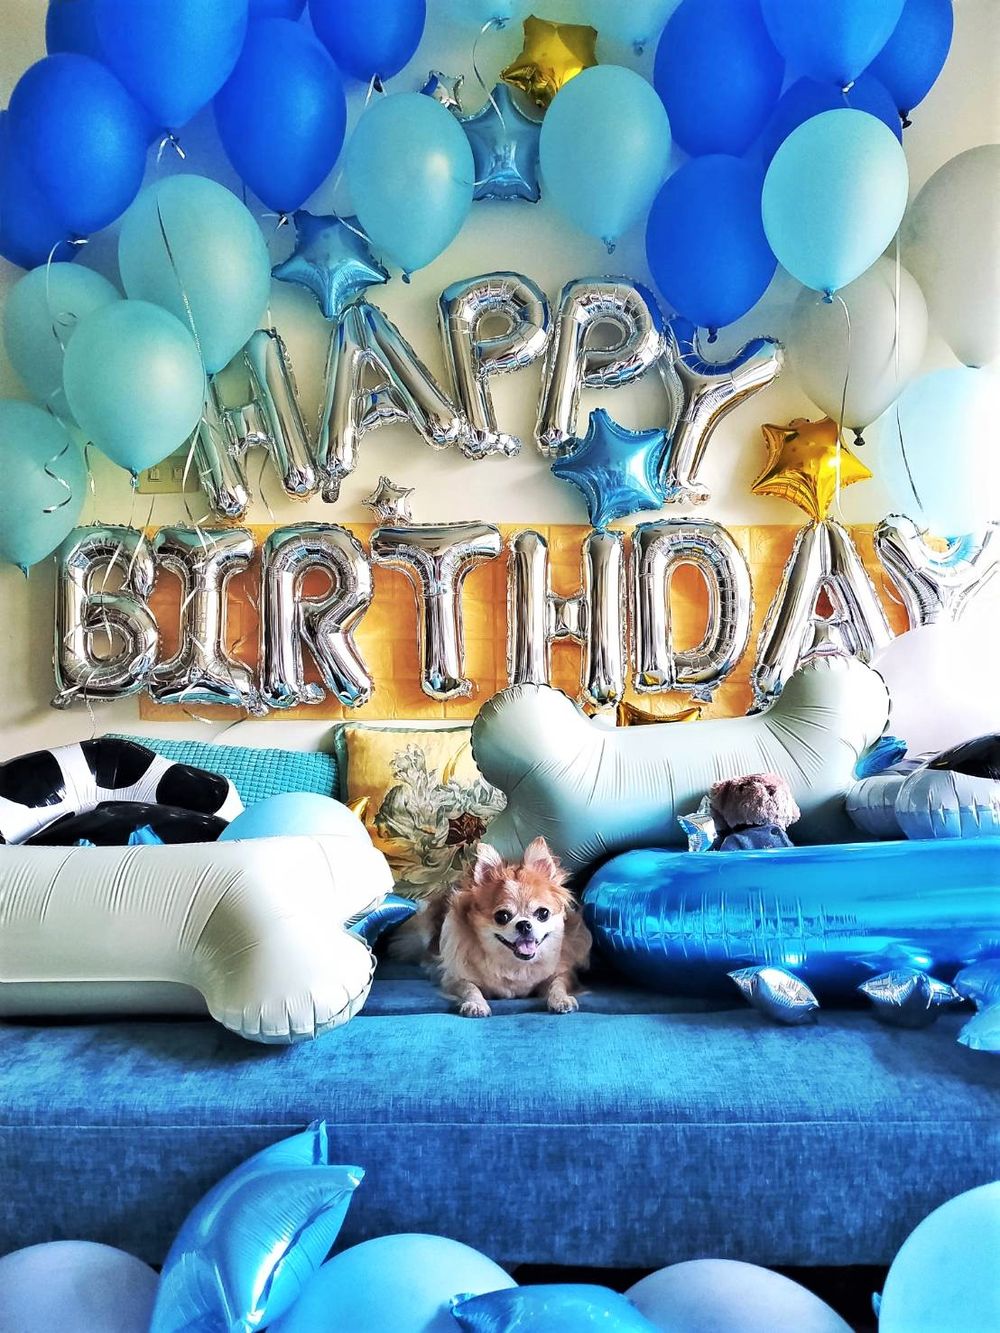 【節慶氣球裝置藝術布置】狗狗生日派對氣球「動森主題」套裝組合 KNJ氣球商城 吃貨旅遊作家水靜葳 (15)